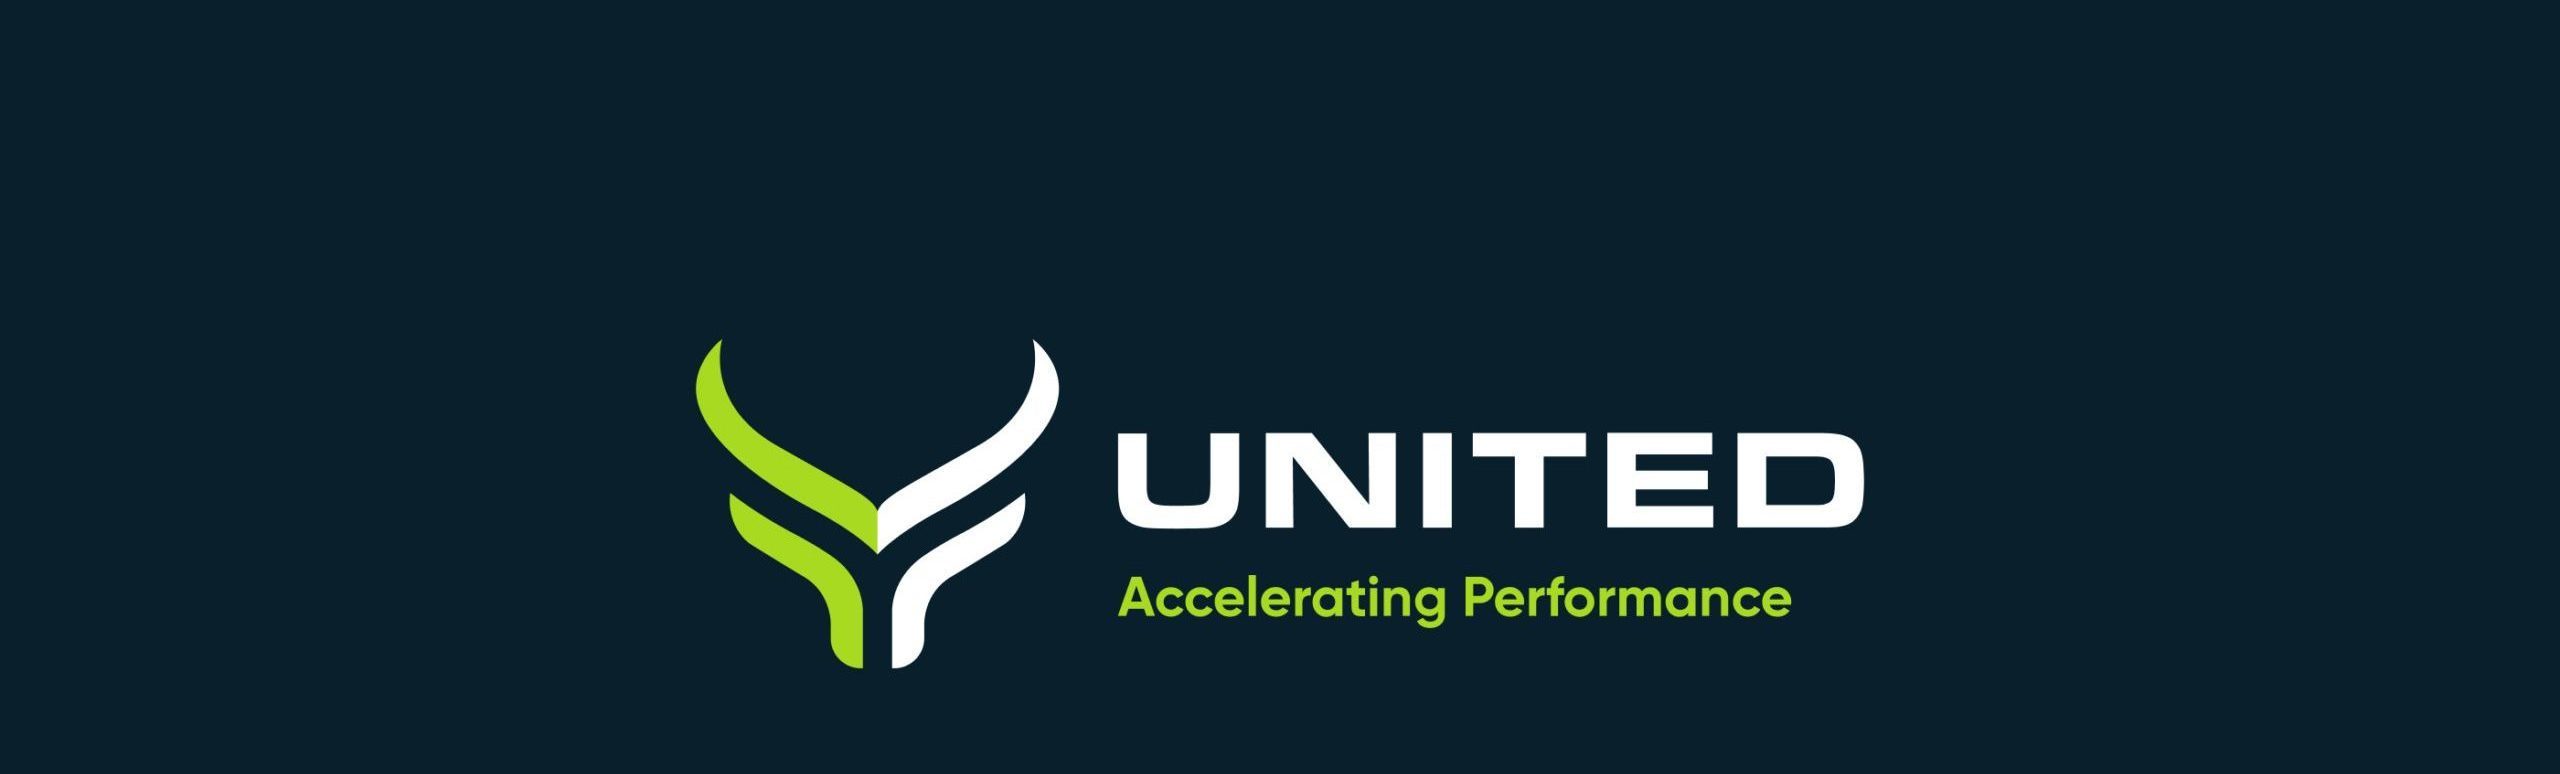 UNITED Logo Blue